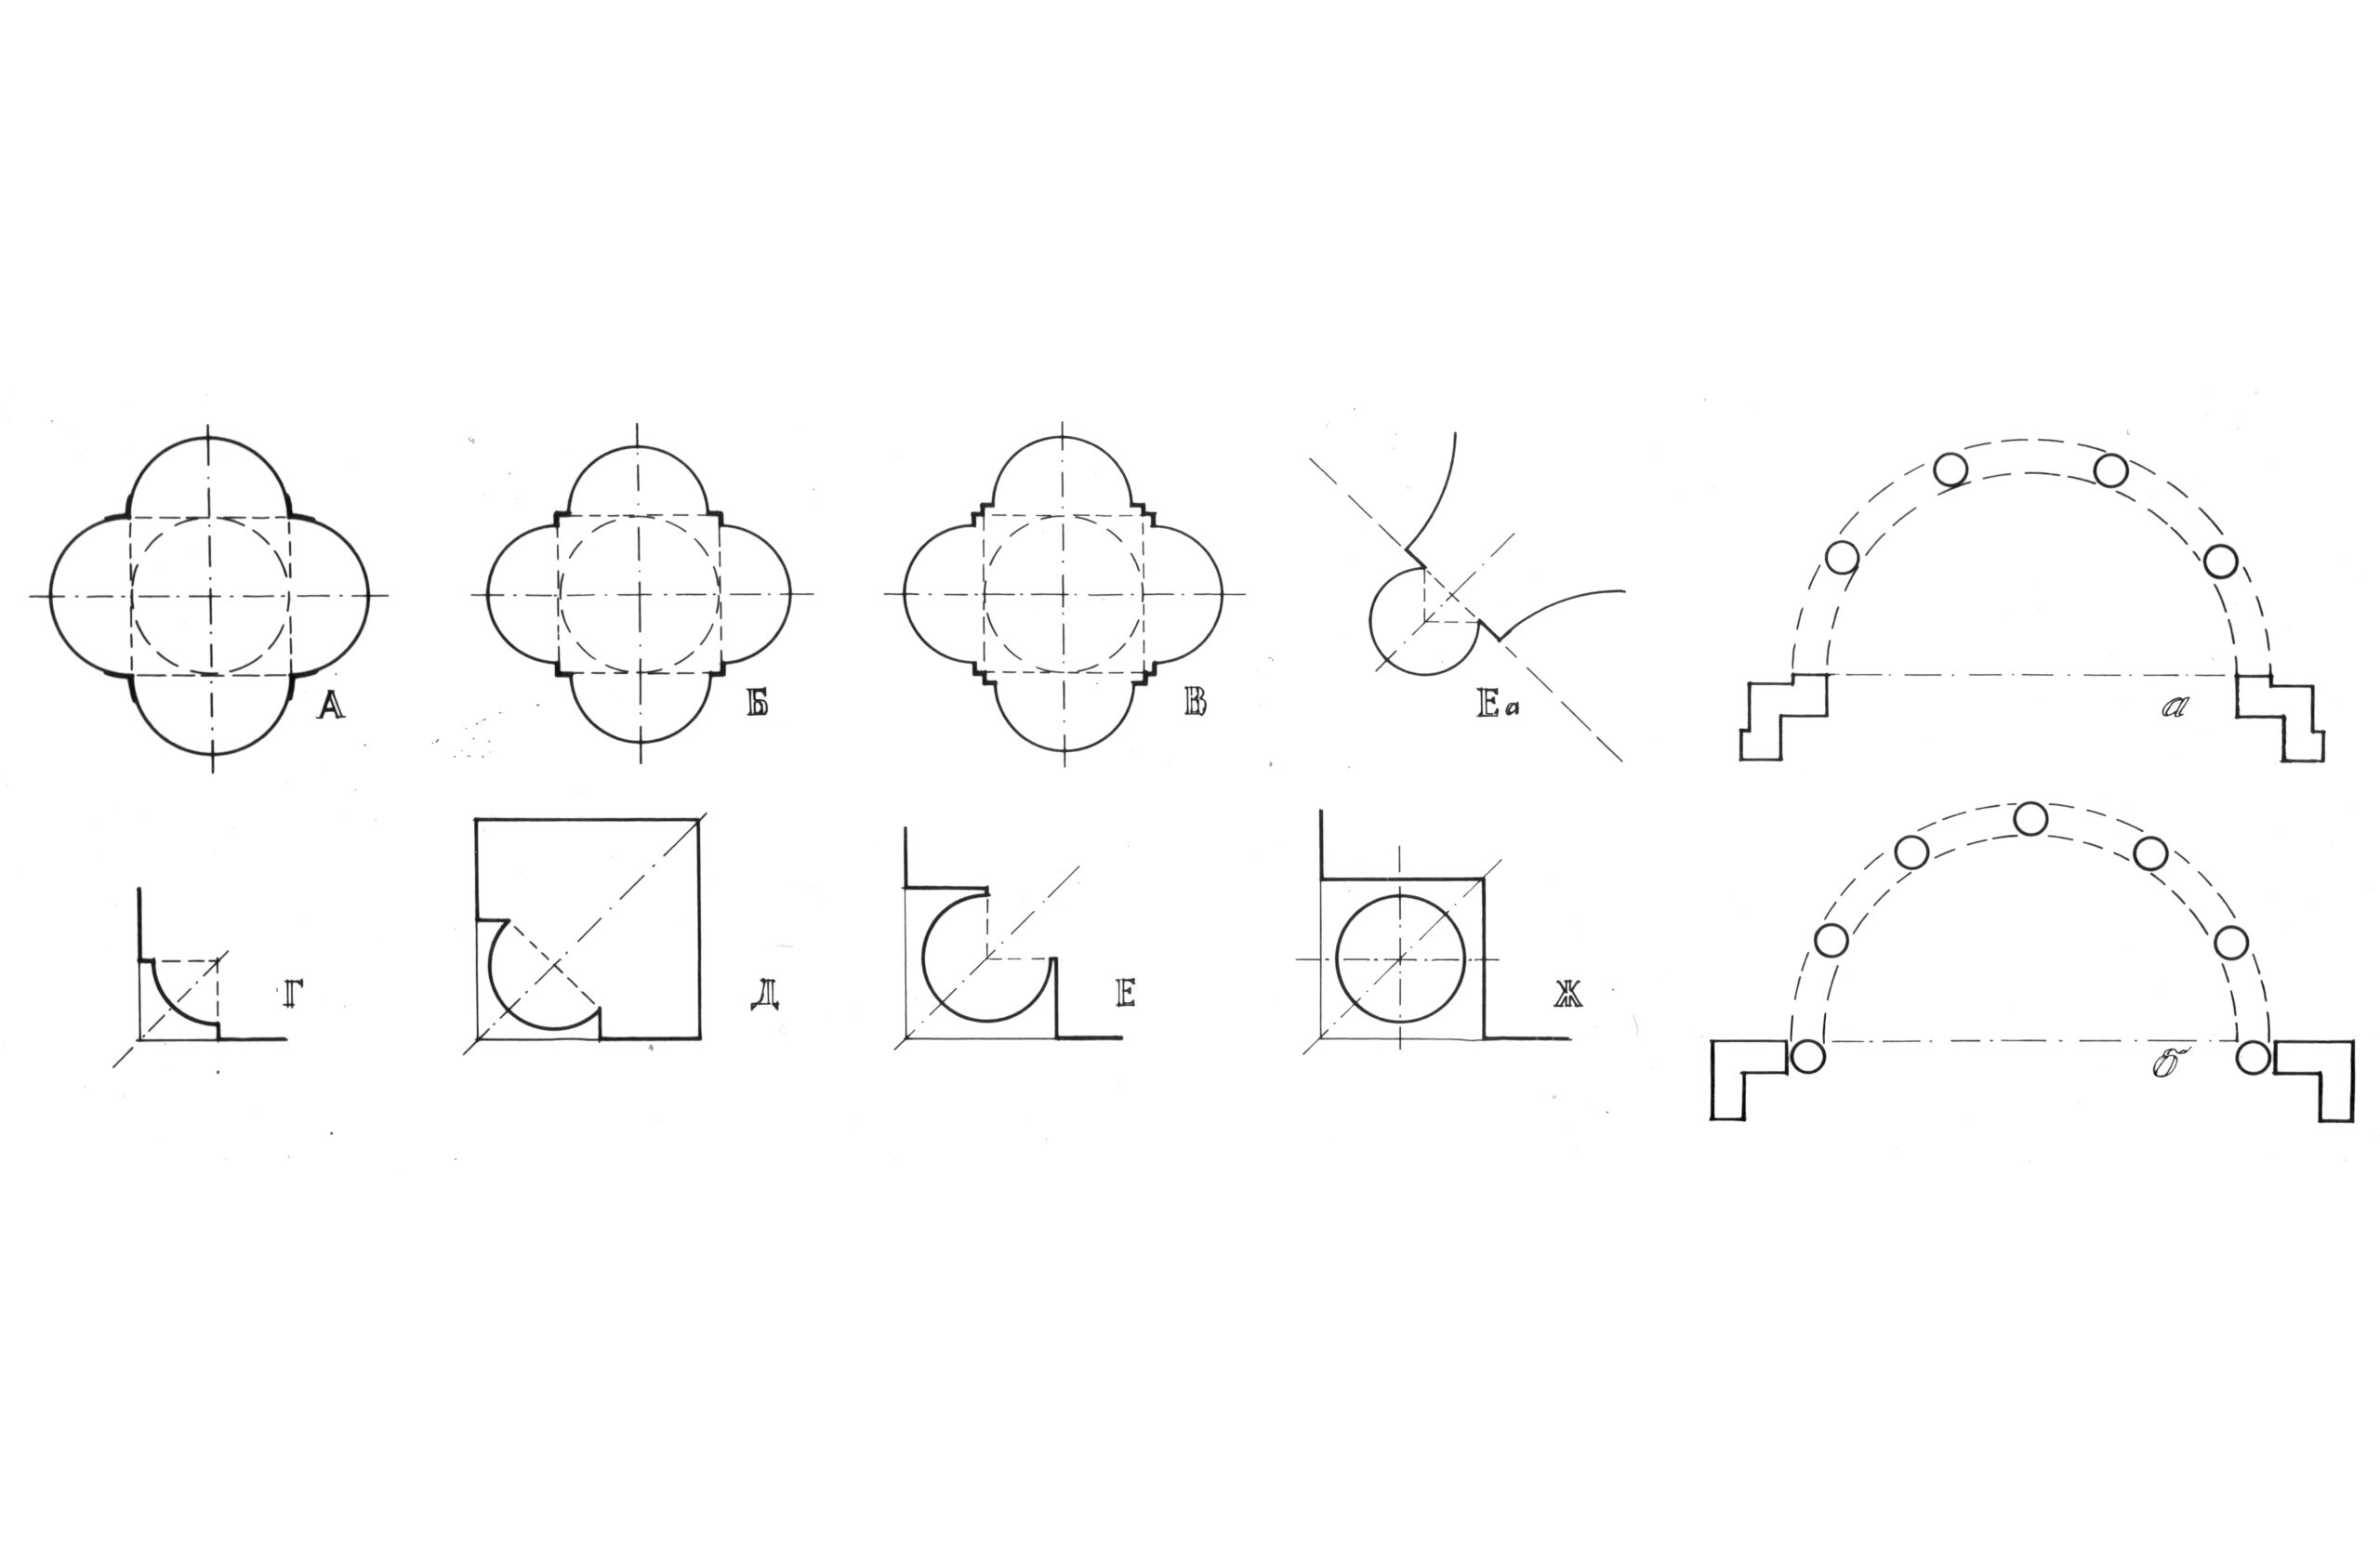 Հայ ճարտարապետության կենտրոնակազմ տաճարների գմբեթատակ քառակուսին ստեղծող անկյունային մասերի մշակումները